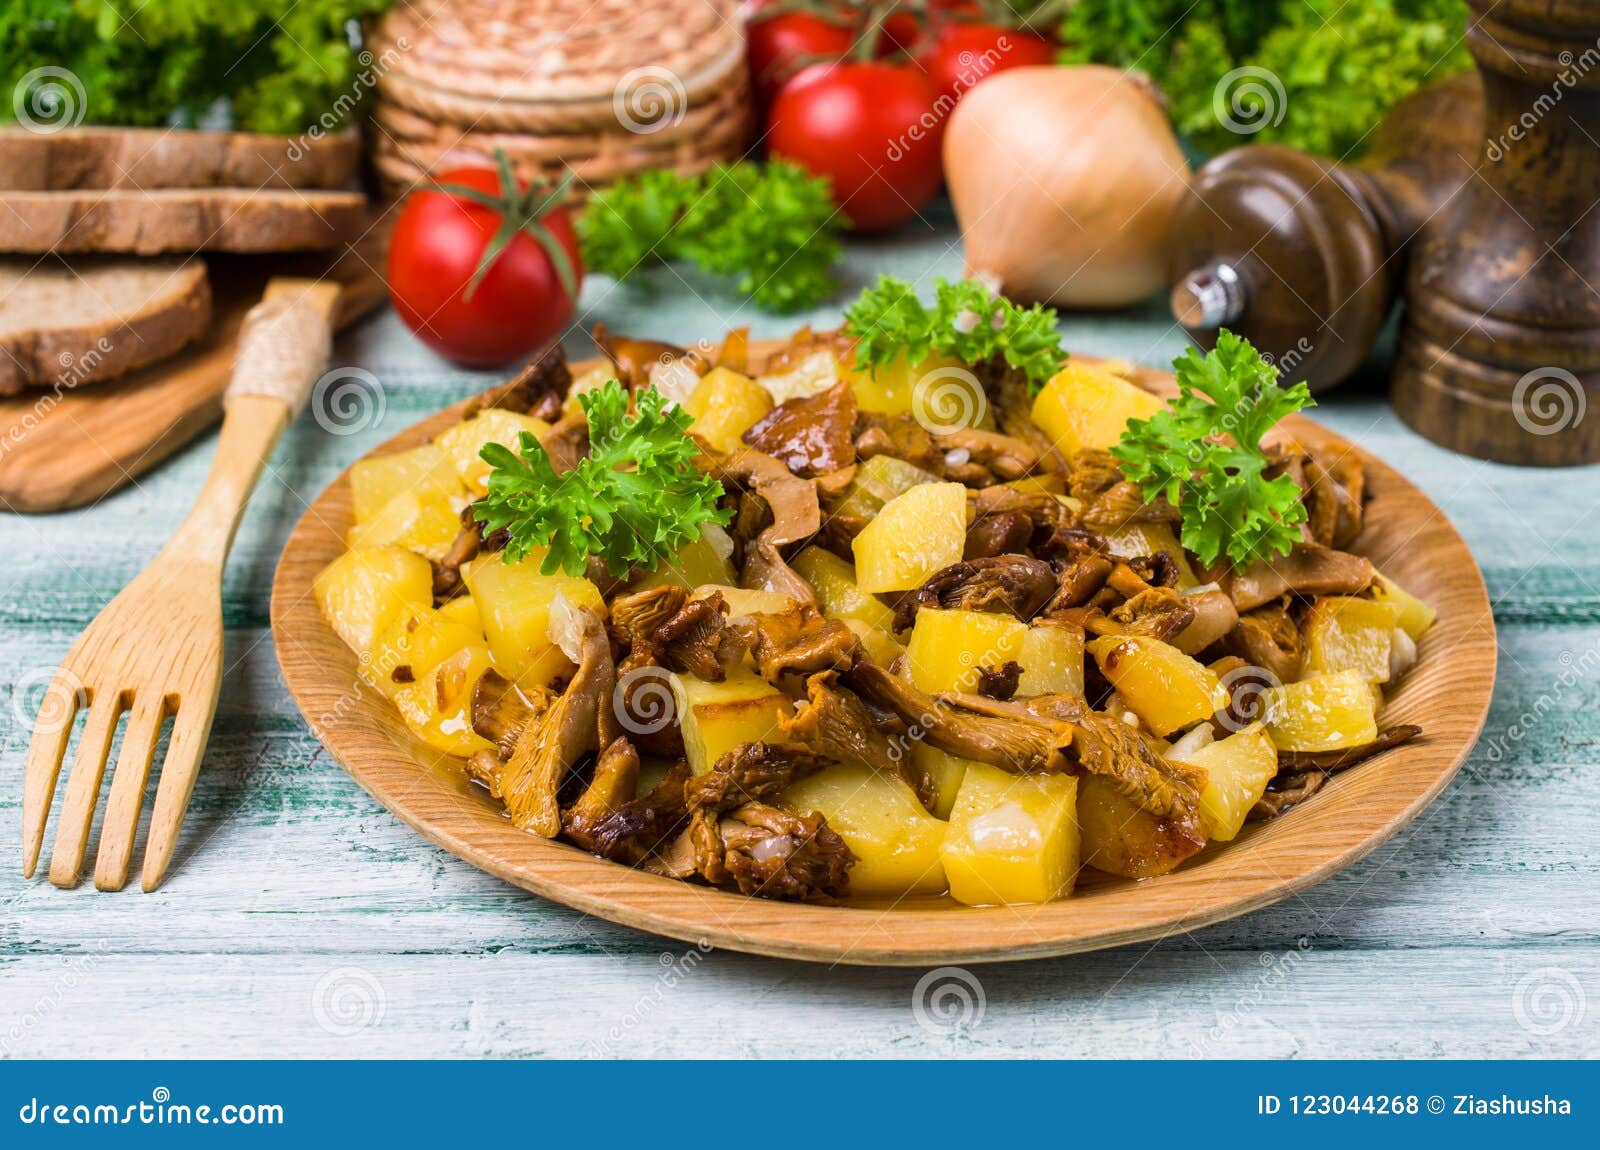 картофель с грибами фото